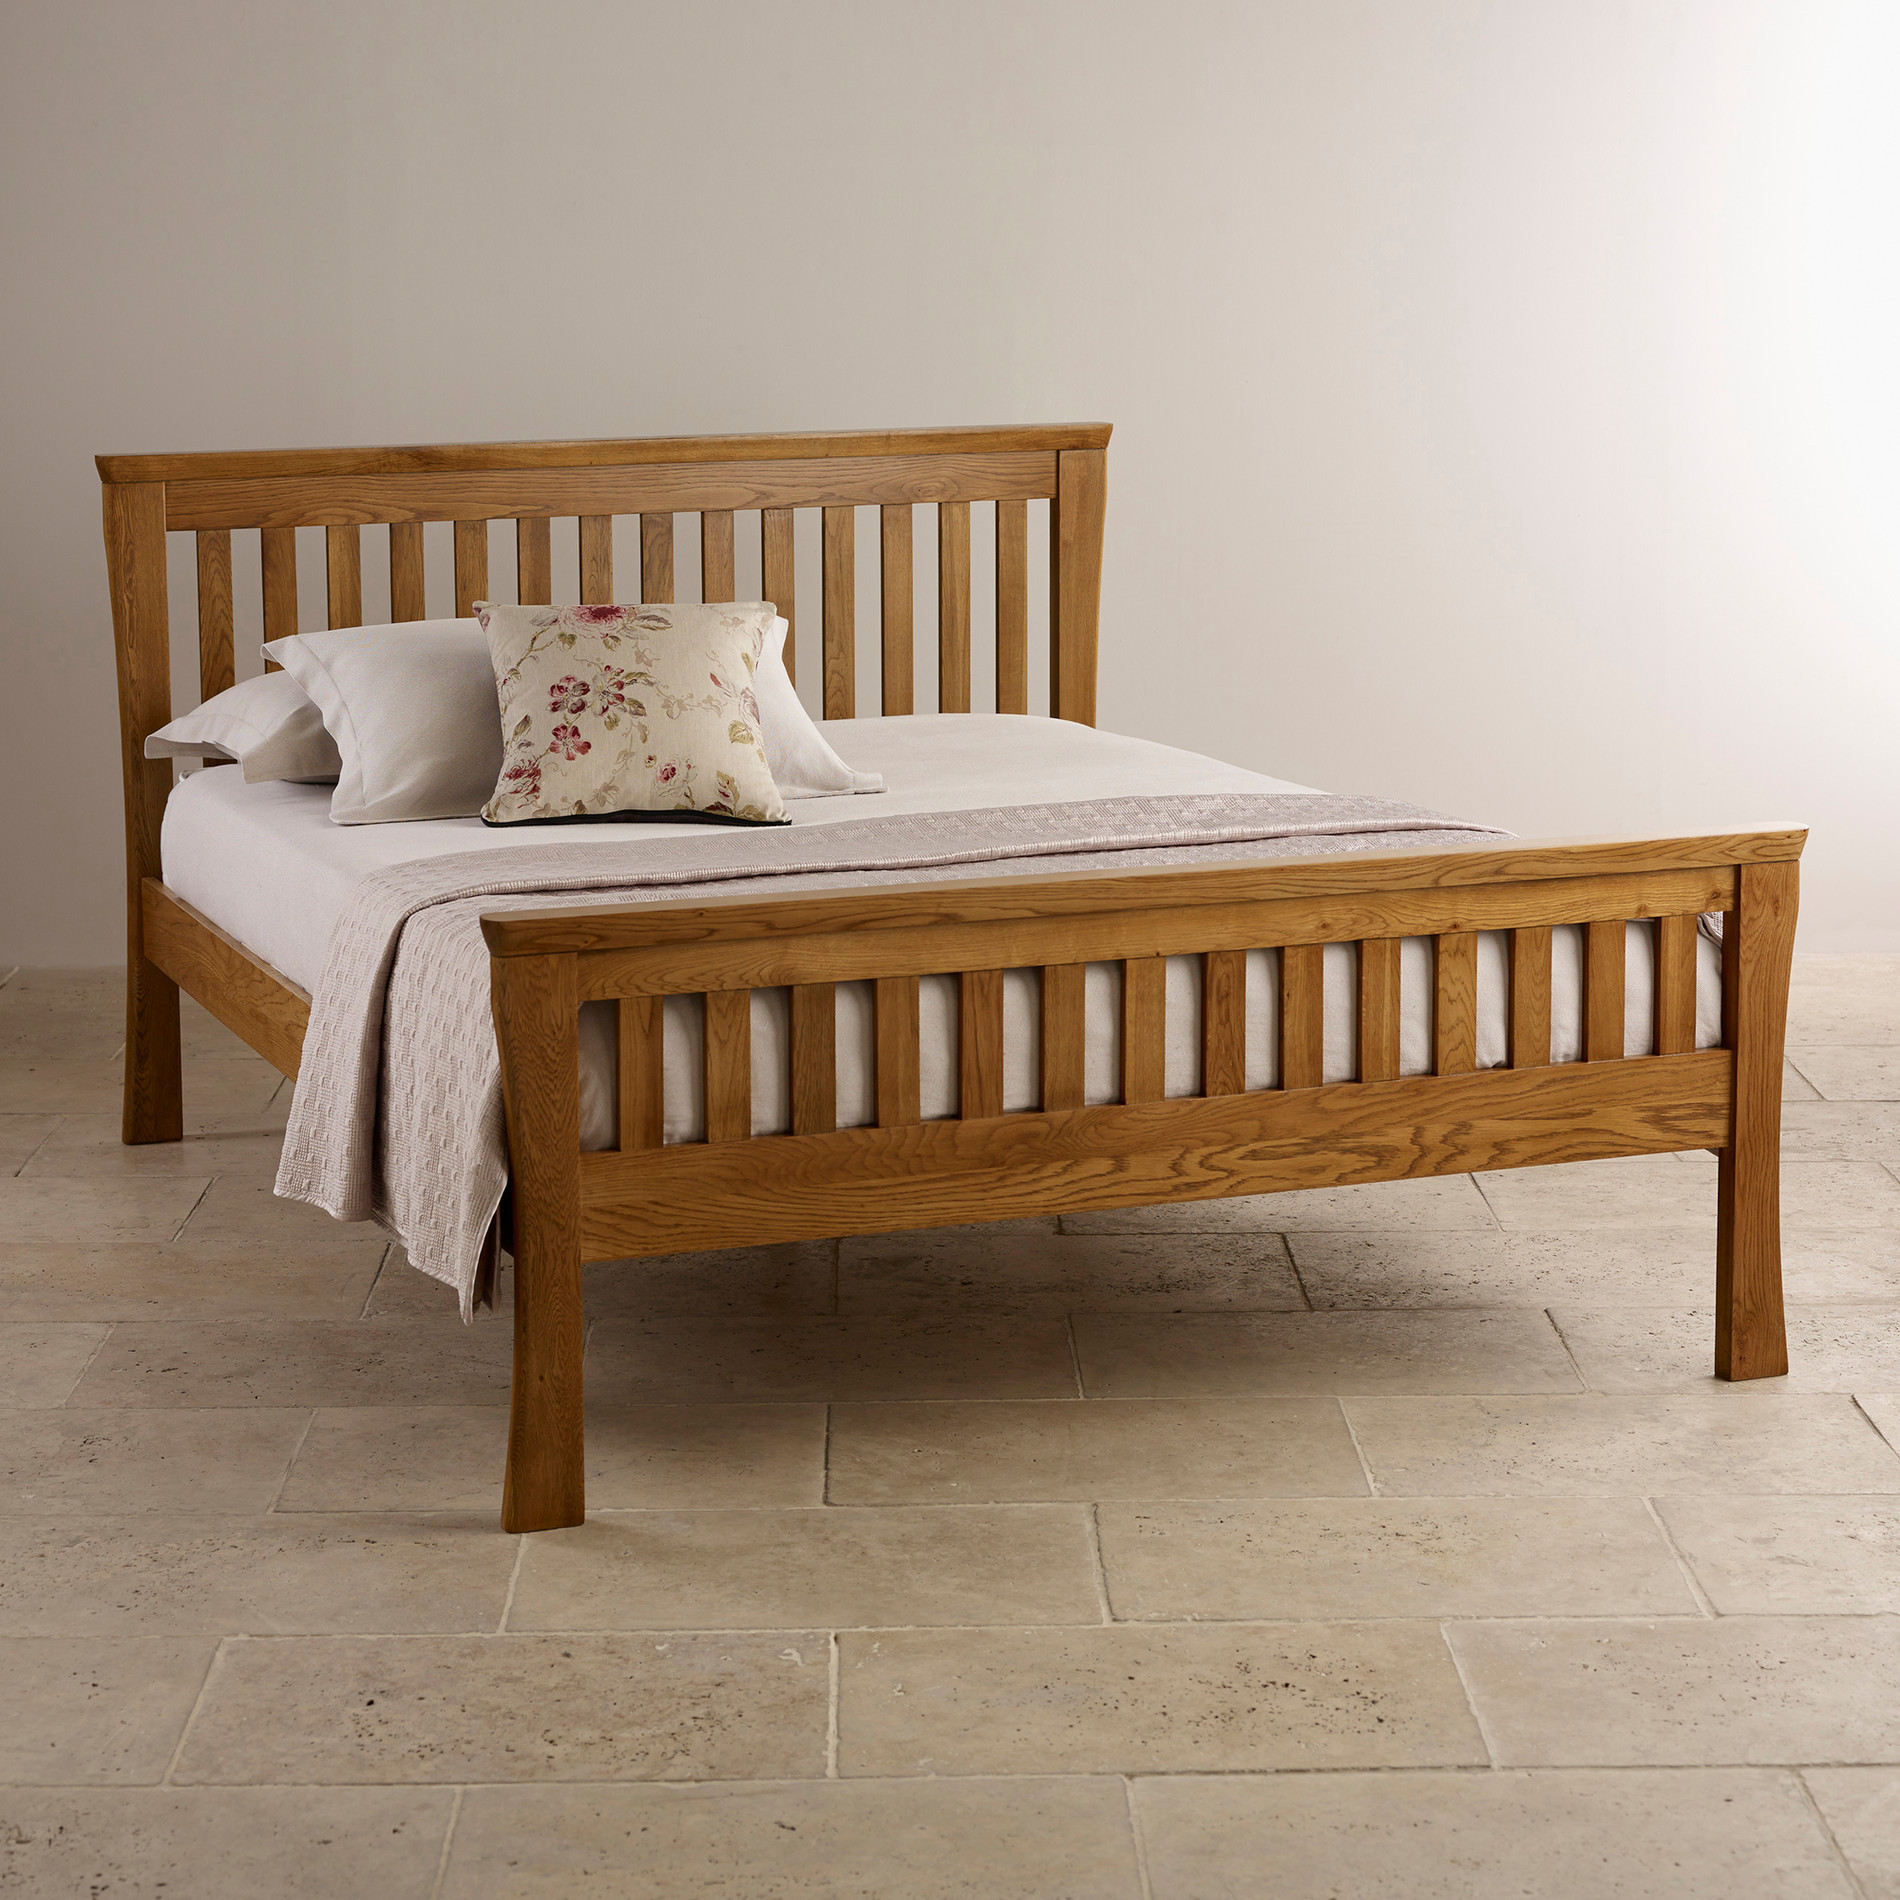 Rustic King Size Bedroom Sets
 Orrick Rustic Solid Oak King Size Bed